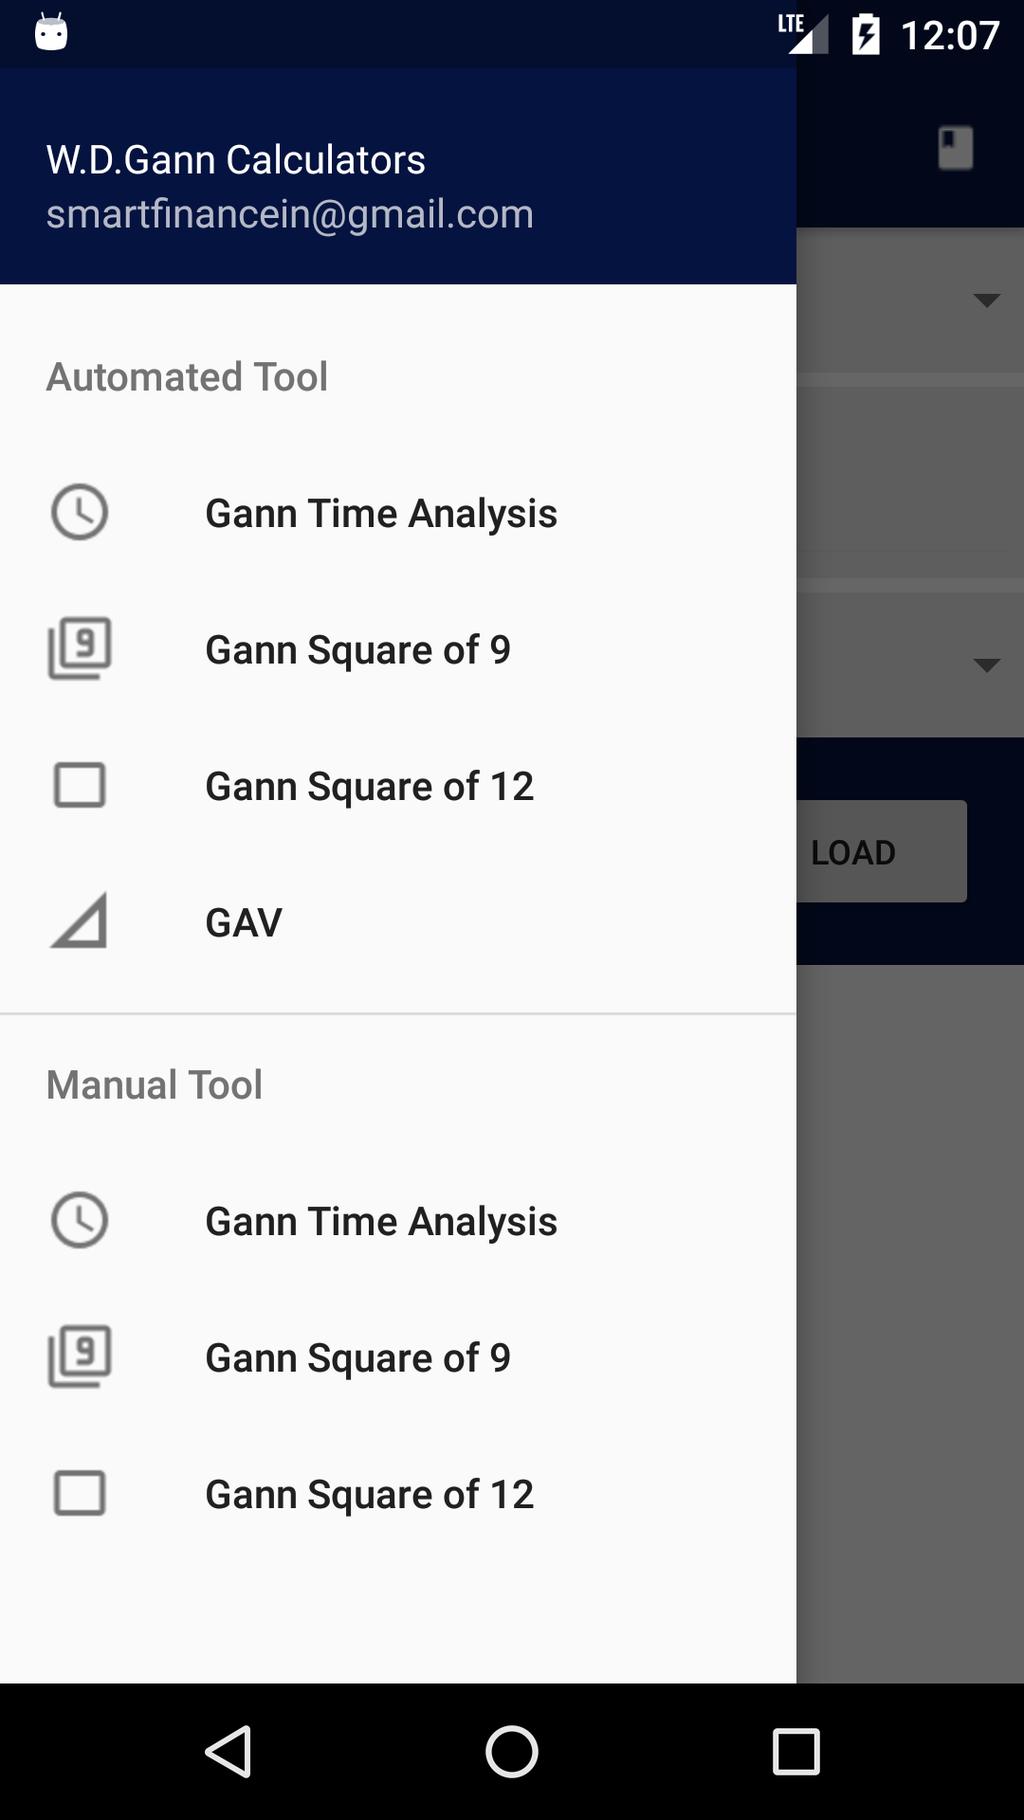 W.D.Gann Calculator Available Tools: 1.